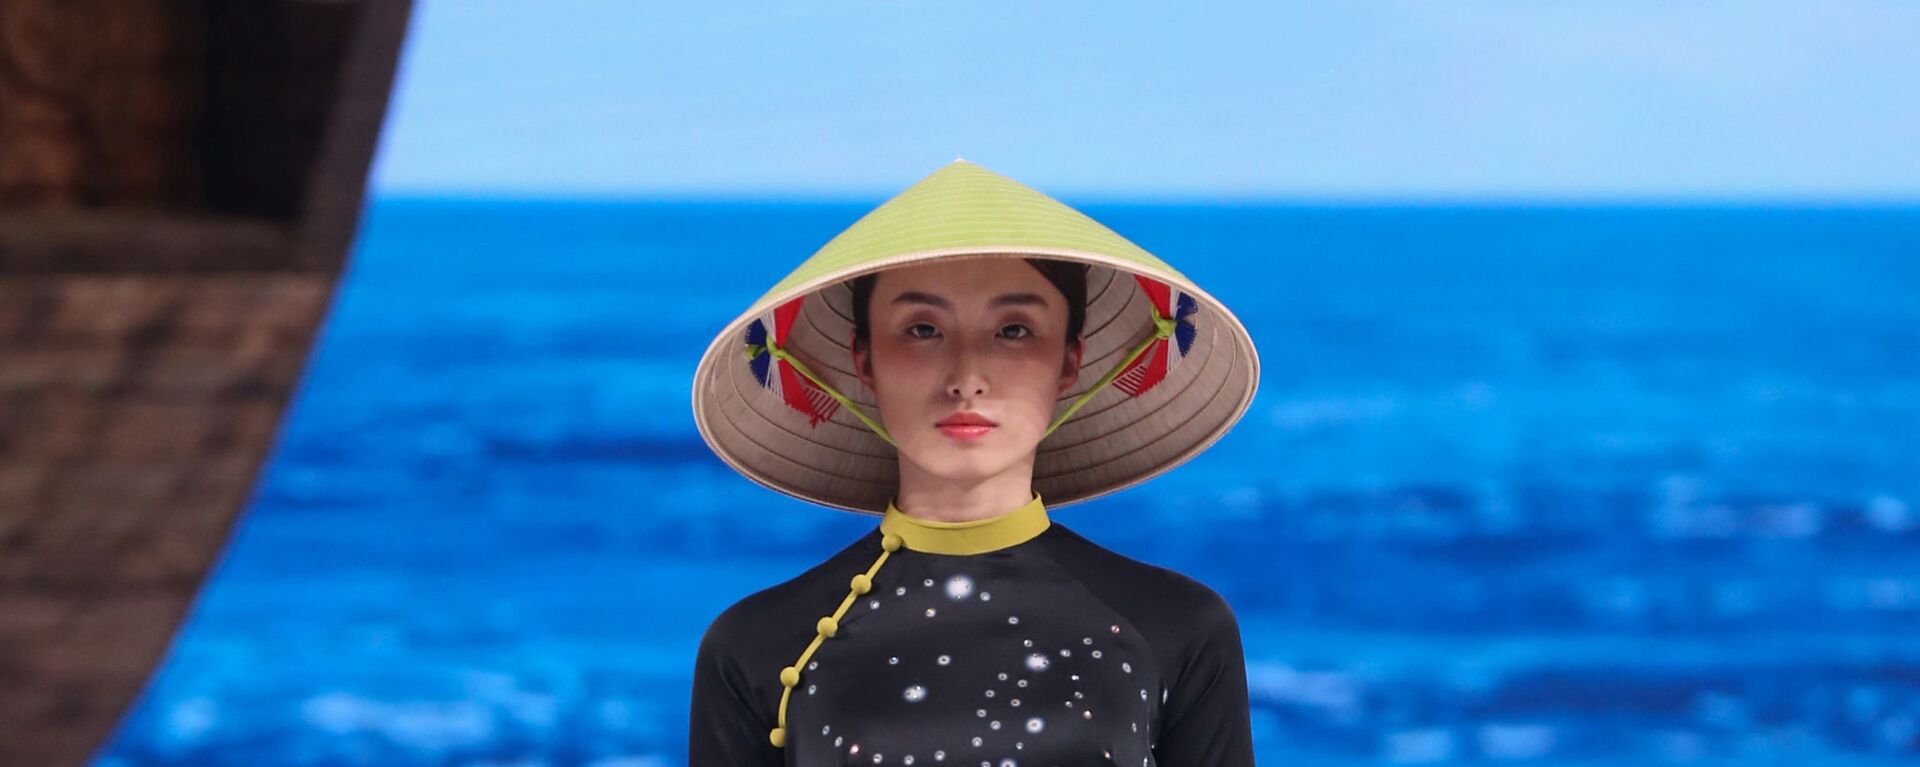 Các thiết kế giống hệt áo dài Việt Nam, kèm theo chiếc nón lá cũng của người Việt nhưng được gọi là phong cách Trung Quốc.  - Sputnik Việt Nam, 1920, 22.11.2019